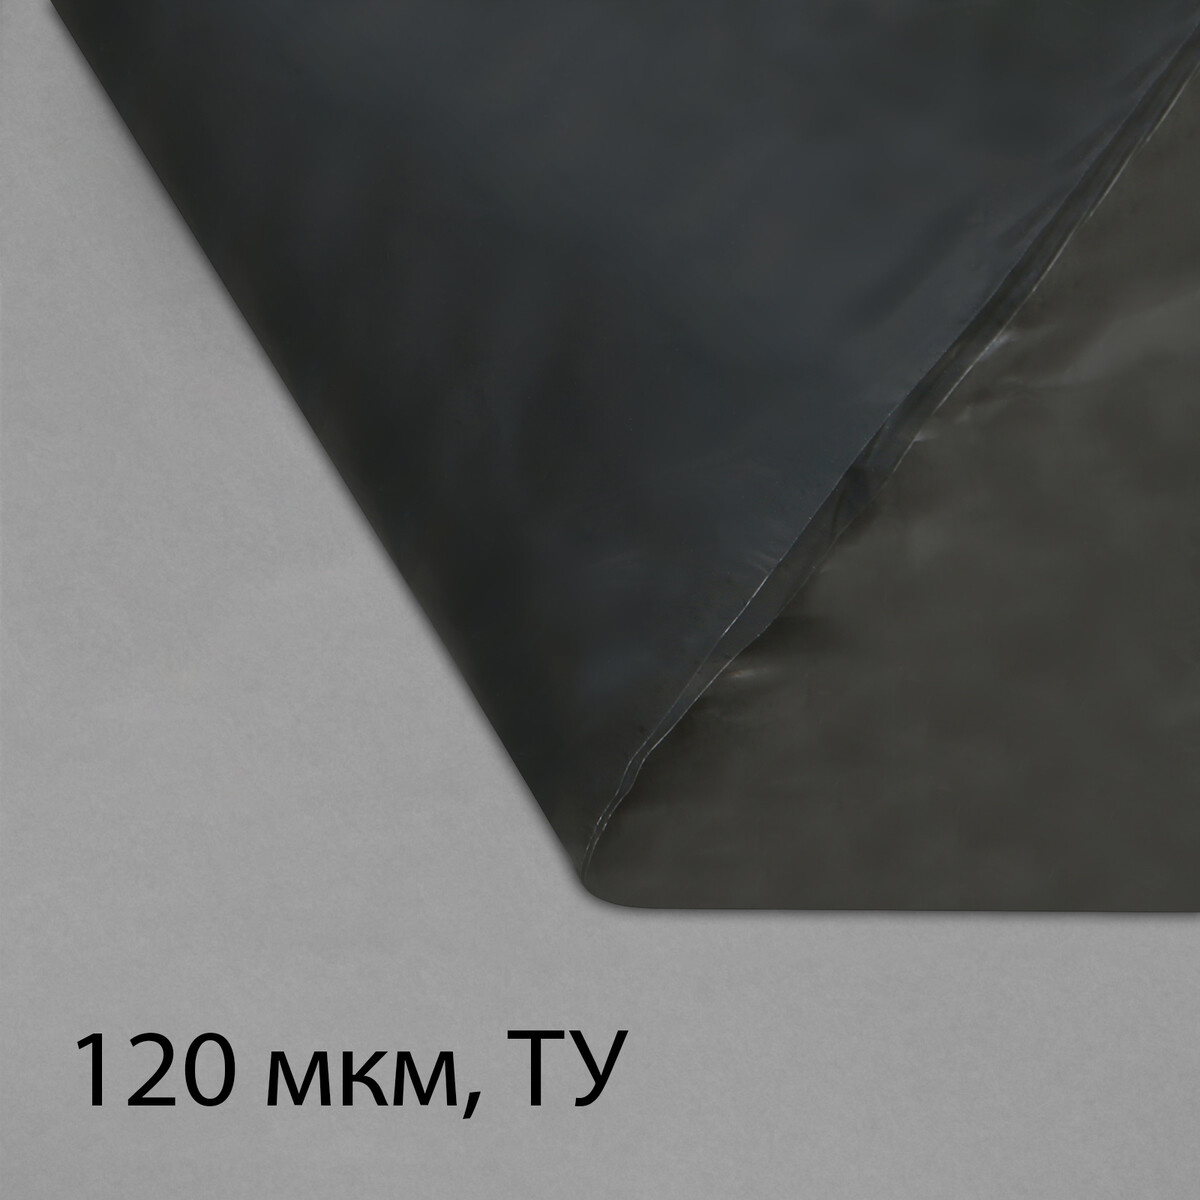 Пленка полиэтиленовая, техническая, толщина 120 мкм, 5 × 3 м, рукав (1,5 м × 2), черная, 2 сорт, эконом 50 % пленка полиэтиленовая техническая 60 мкм черная длина 10 м ширина 3 м рукав 1 5 м × 2 эконом 50%